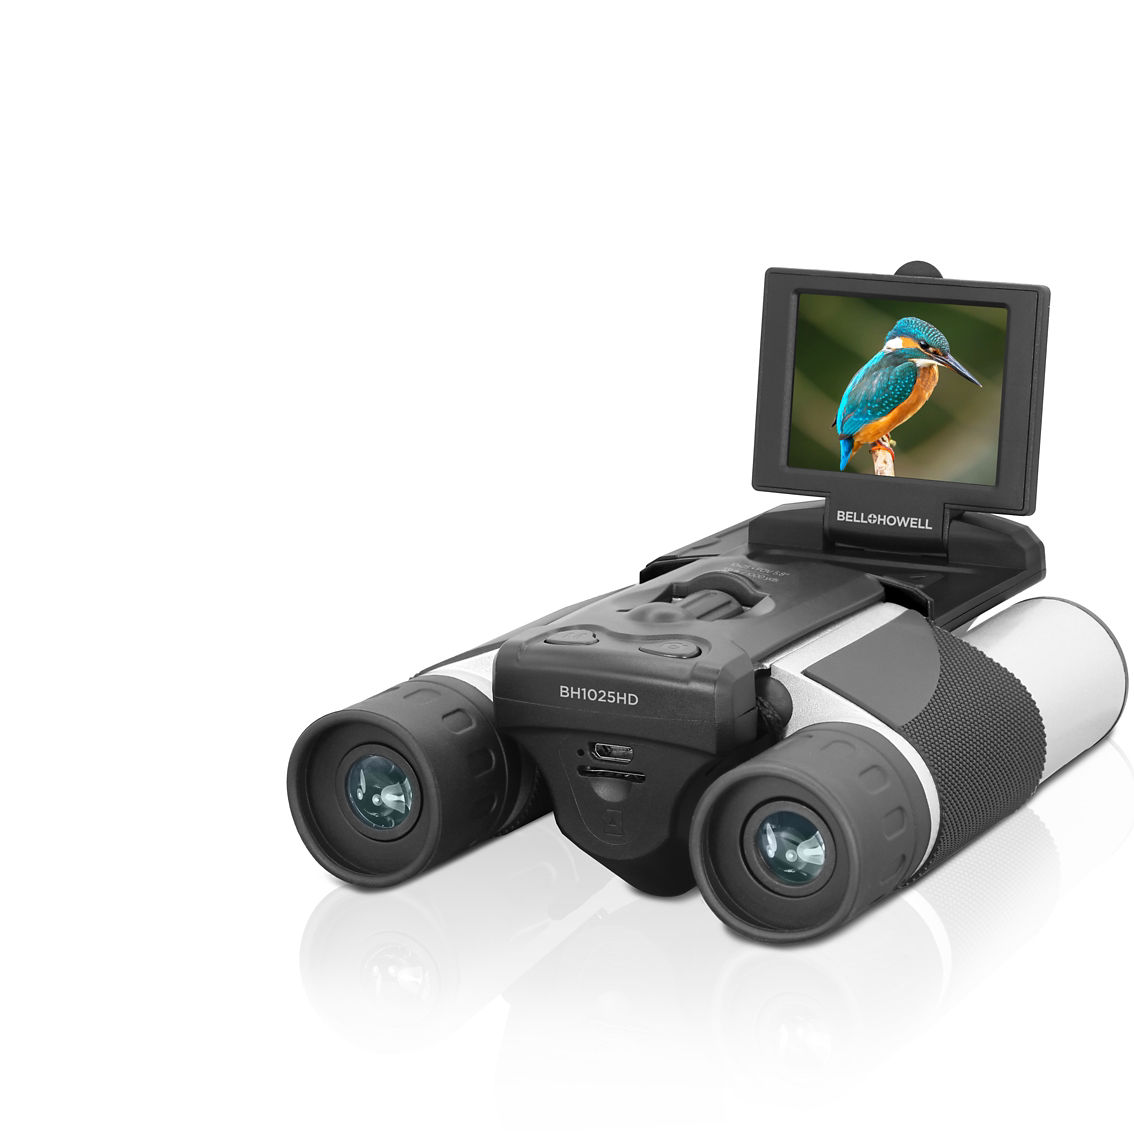 BELL+HOWELL BH1025HD 10x25 Binoculars w/2.5K Quad HD Video Camera